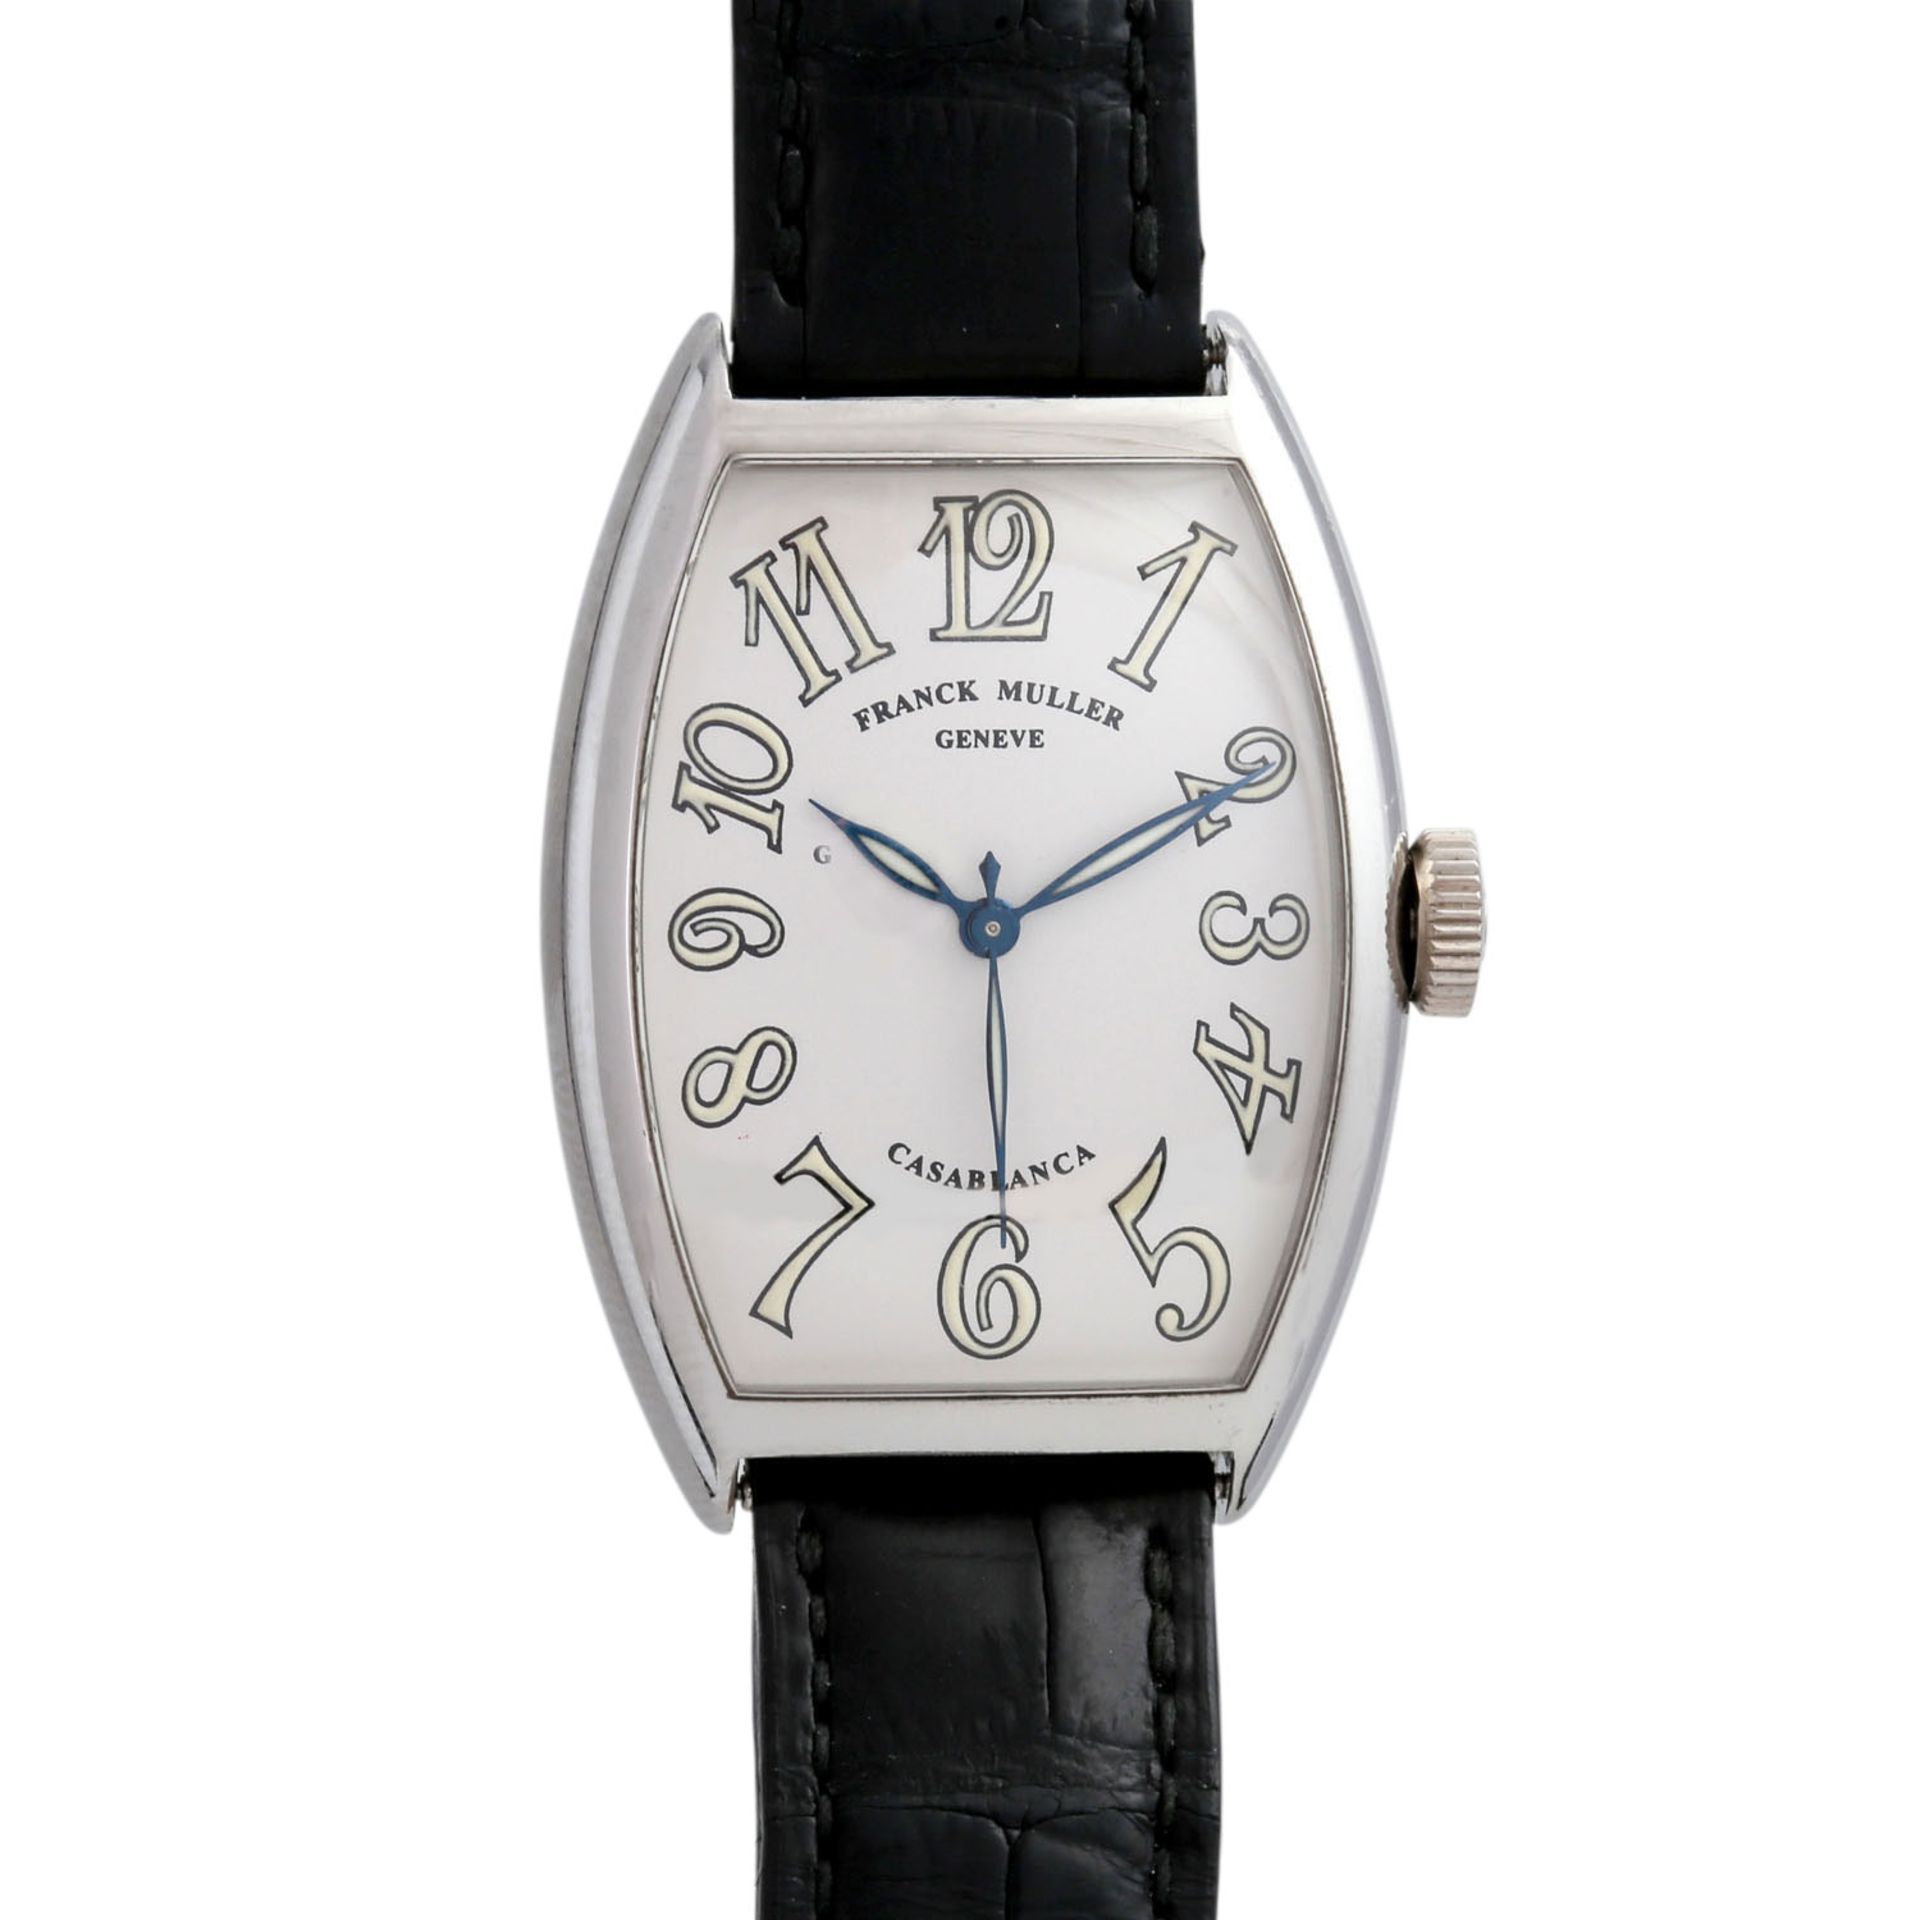 FRANCK MULLER Casablanca Armbanduhr, Ref. 5850.Edelstahl. Automatic-Werk. Serien-Nr. 674. Original-